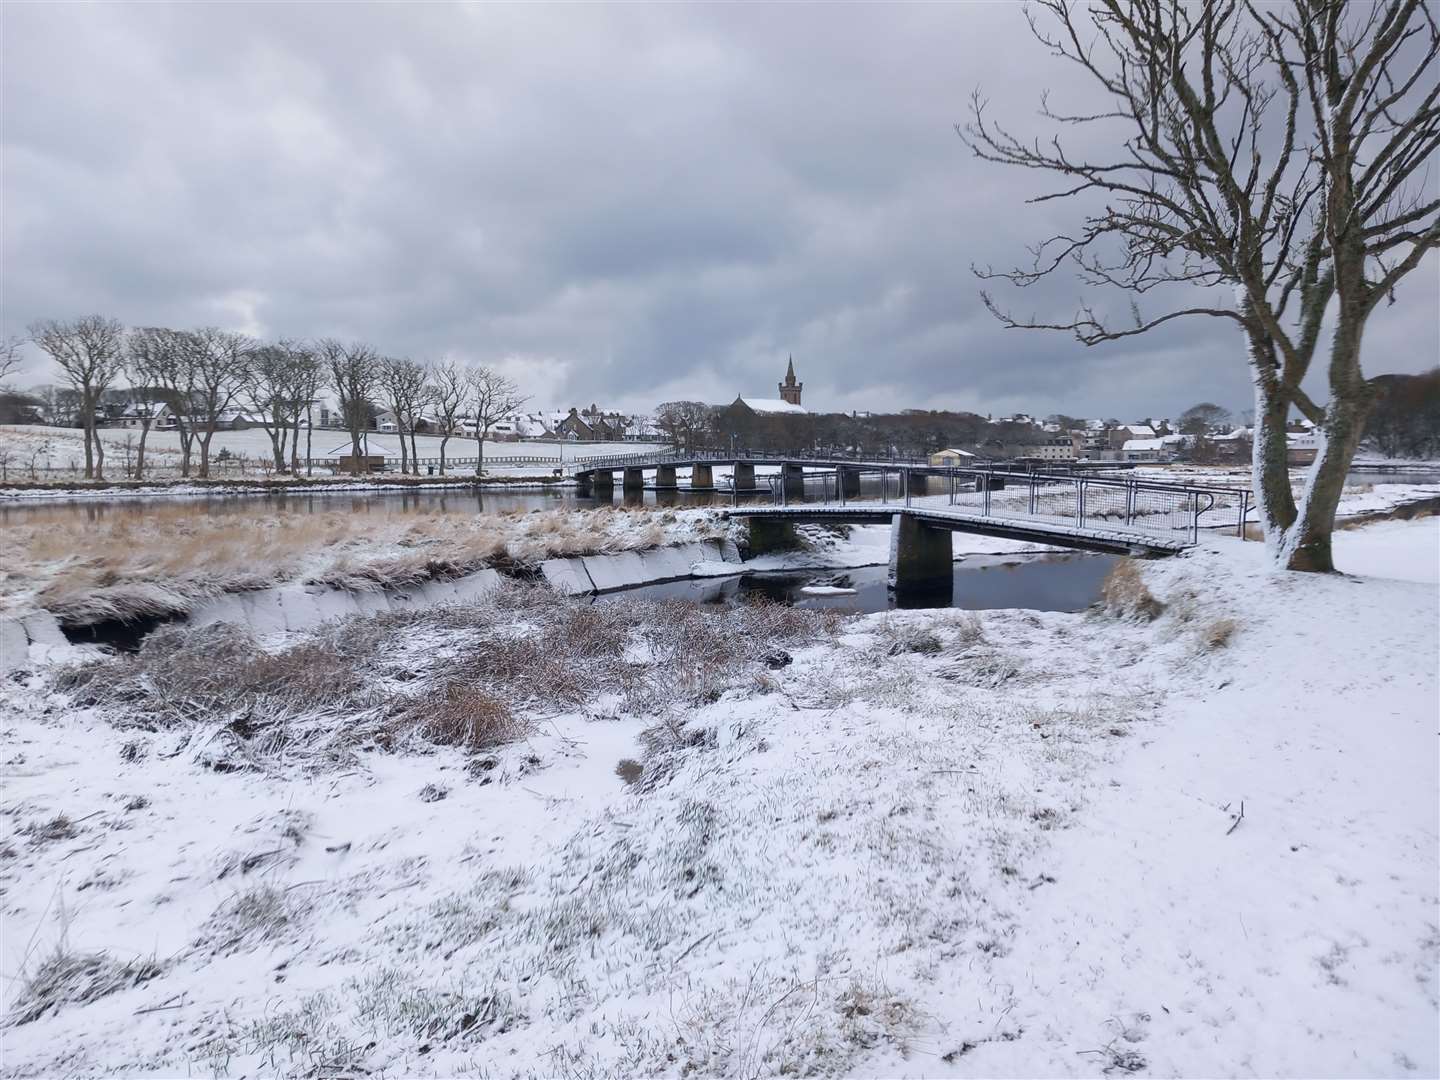 A snowy riverside in Wick on an early morning walk, sent in by Derek Bremner.